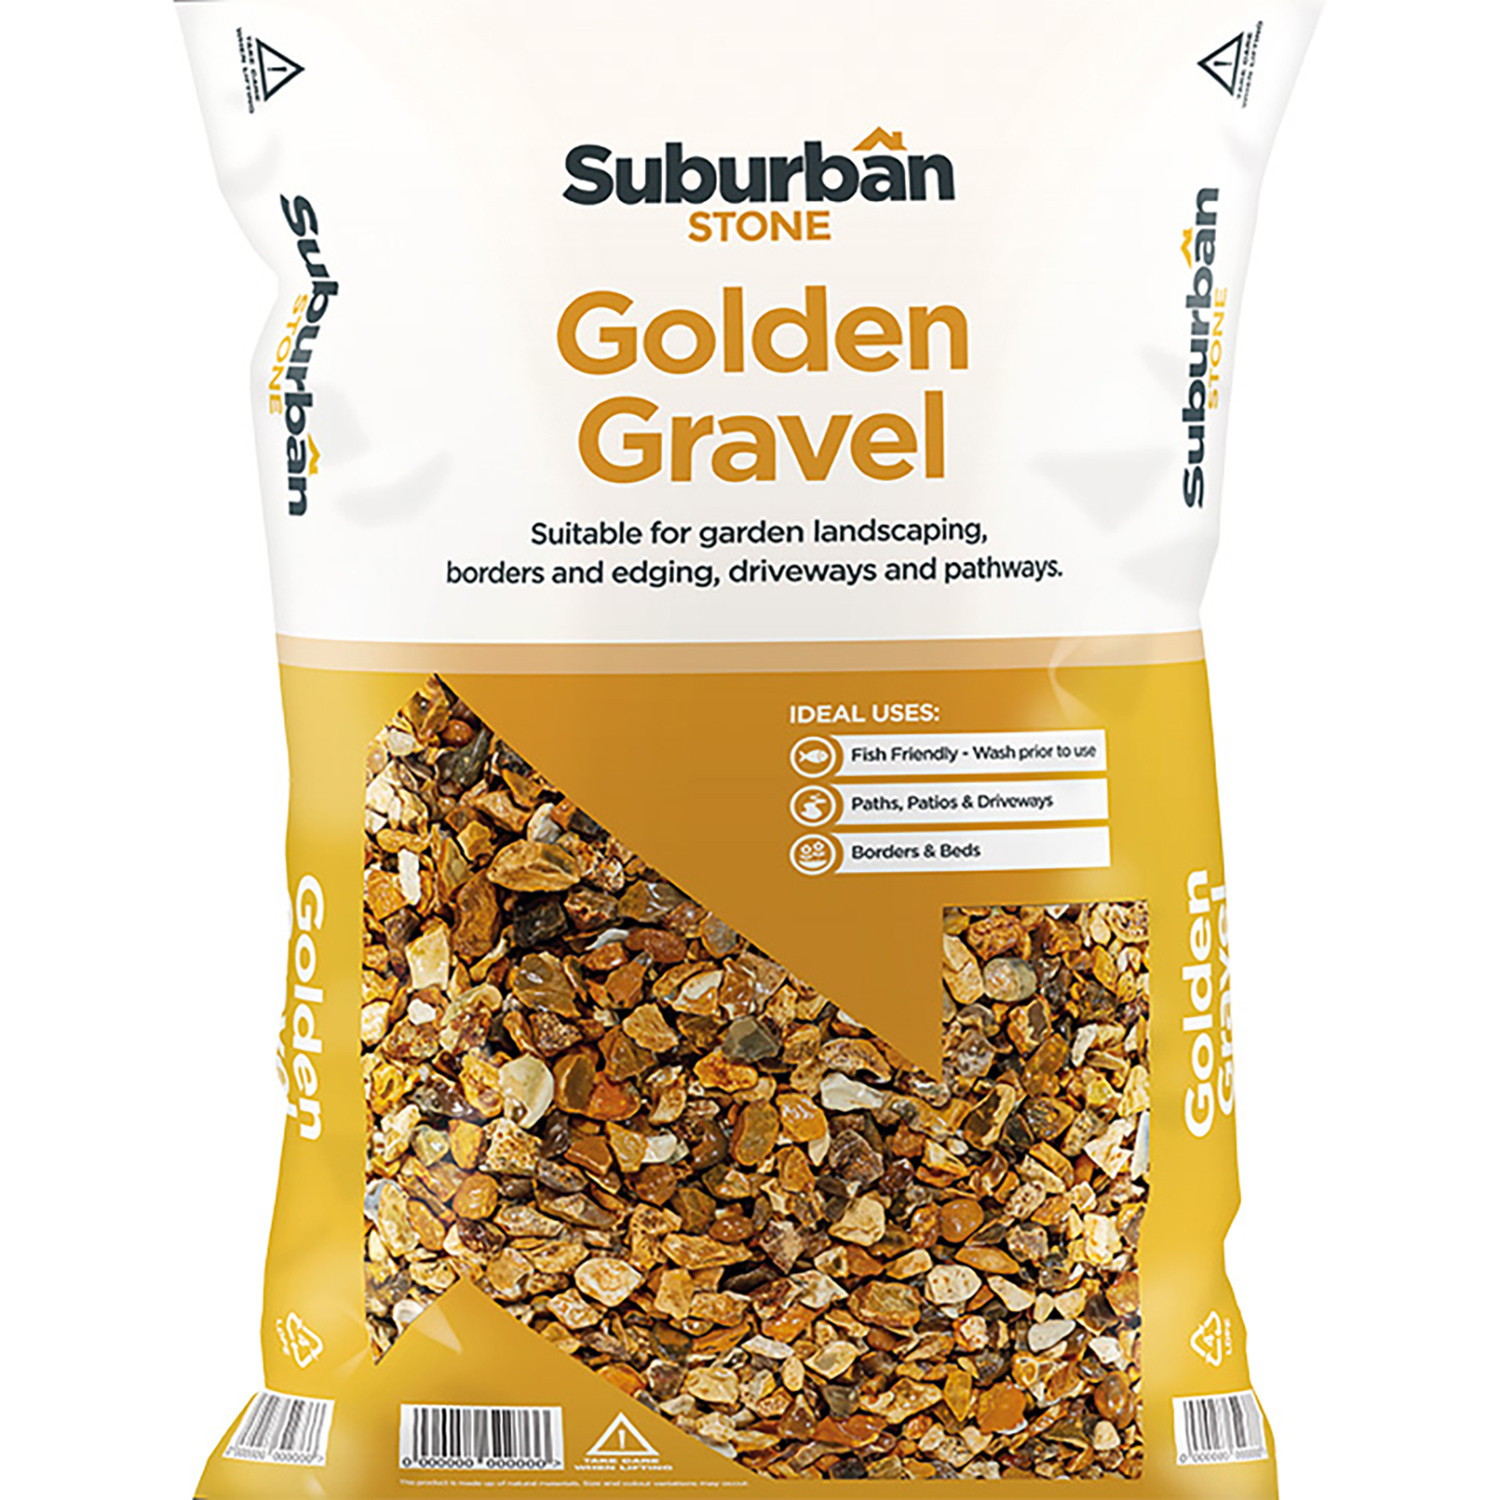 Suburban Stone Golden Gravel Chippings 20kg Image